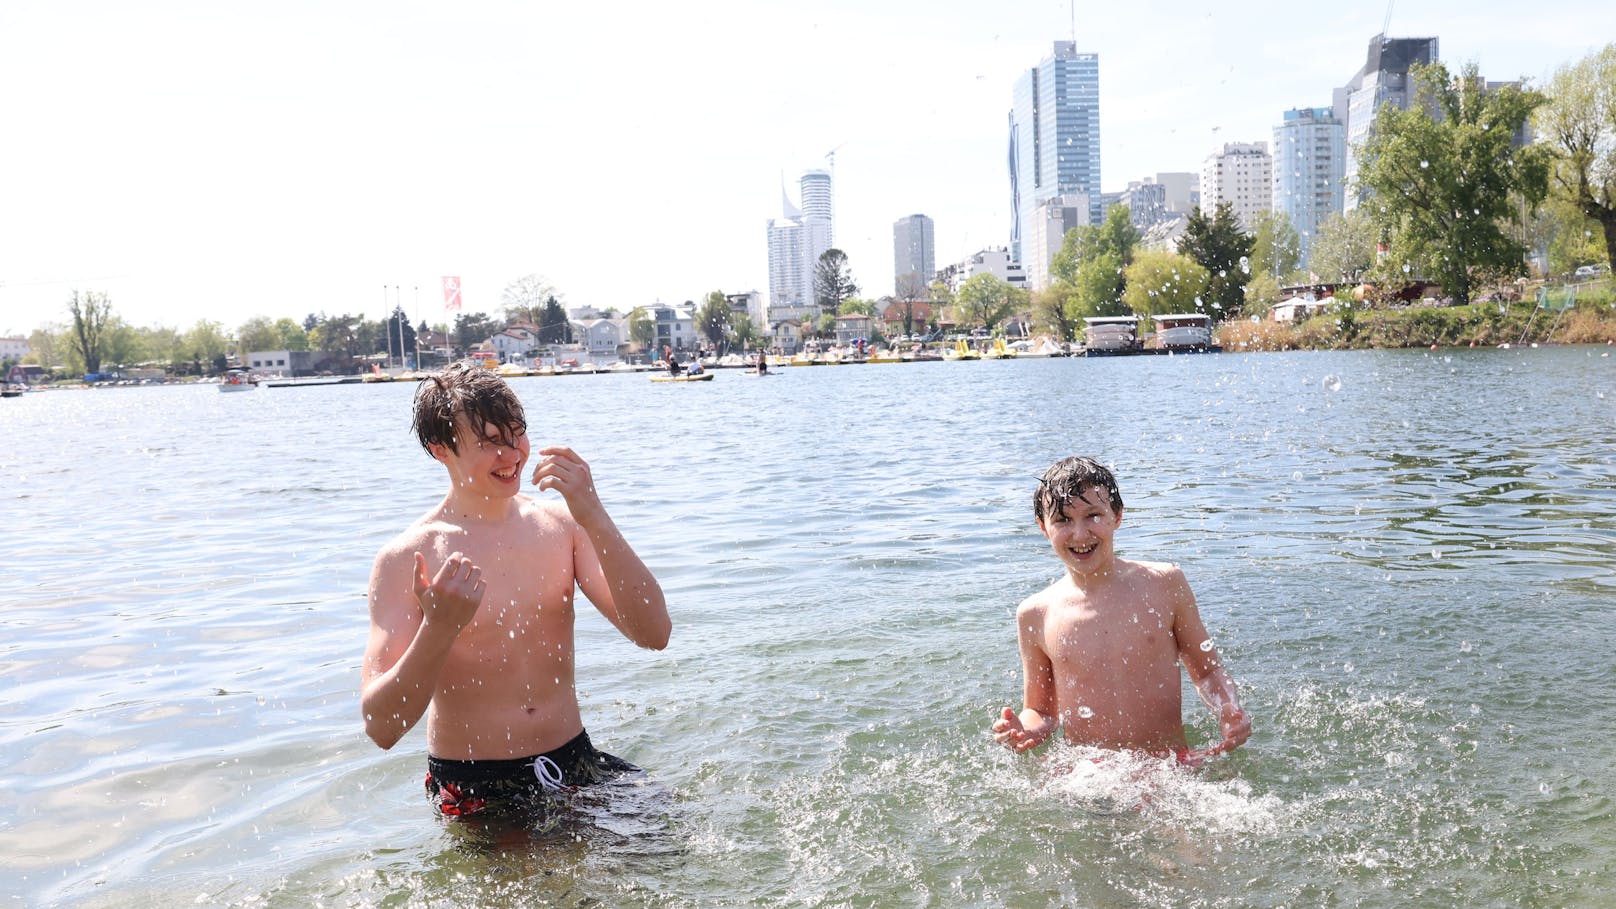 Hitze in Wien – Wasserratten wagen sich in Alte Donau